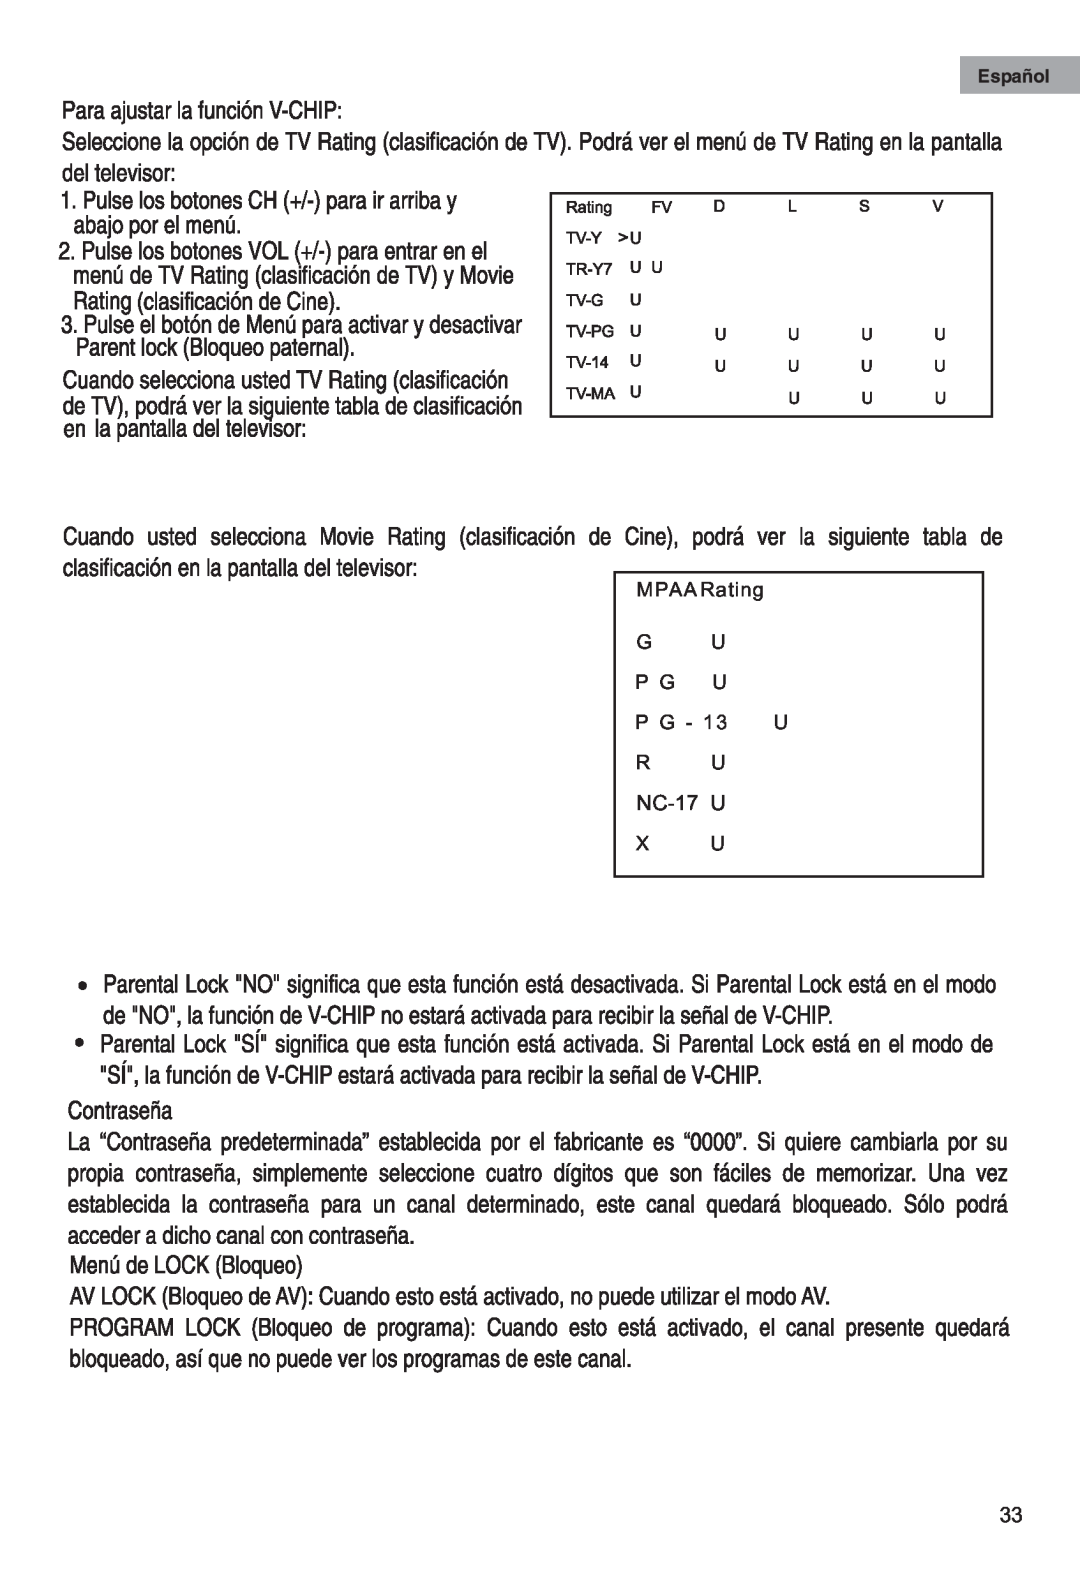 Haier HTAF15 manual NC-17 U, MPAA Rating G U P G U 